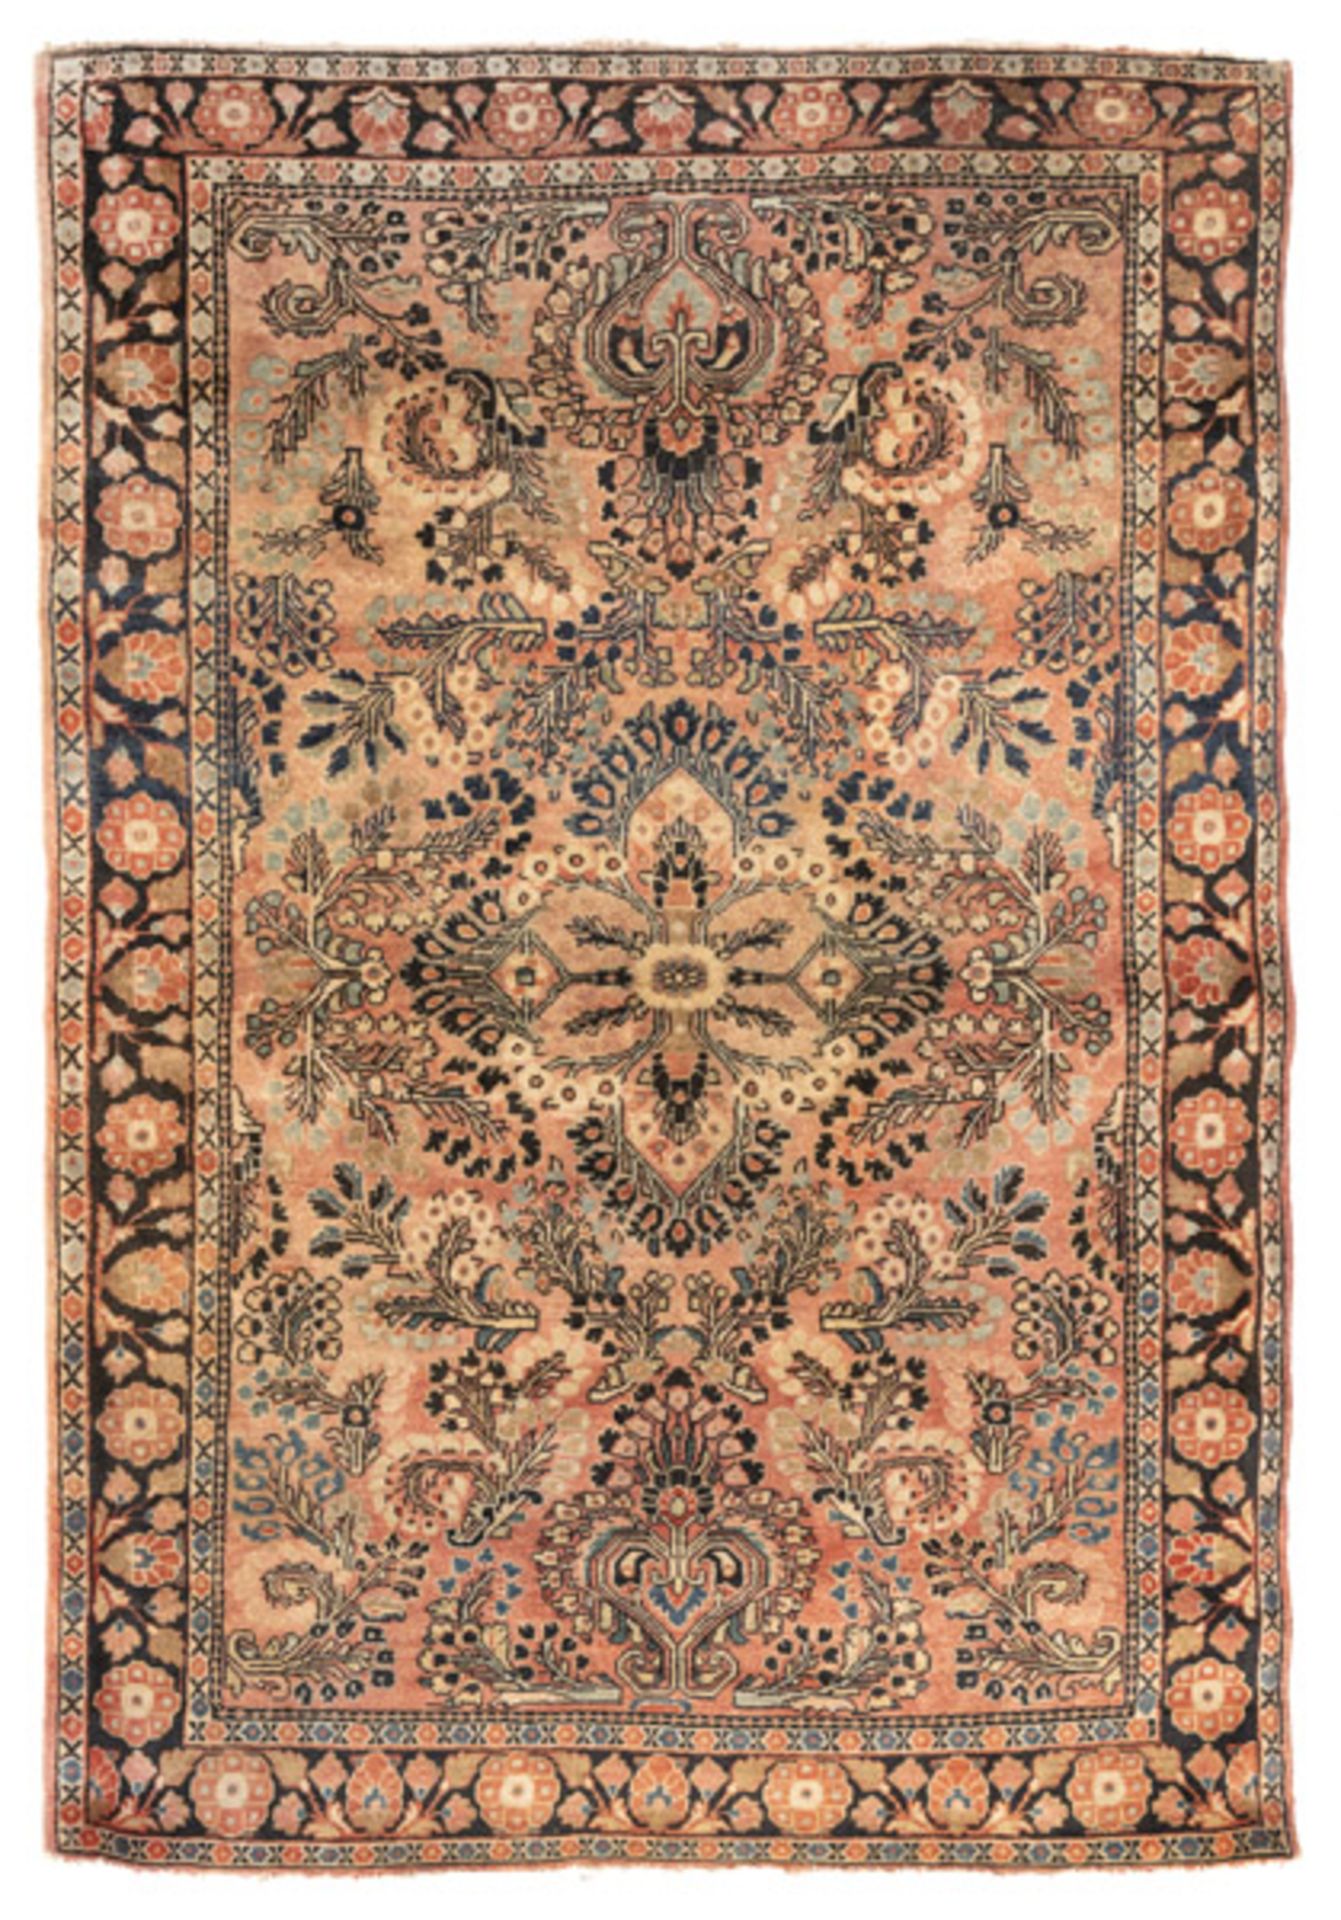 A semi antique Sarouk rug